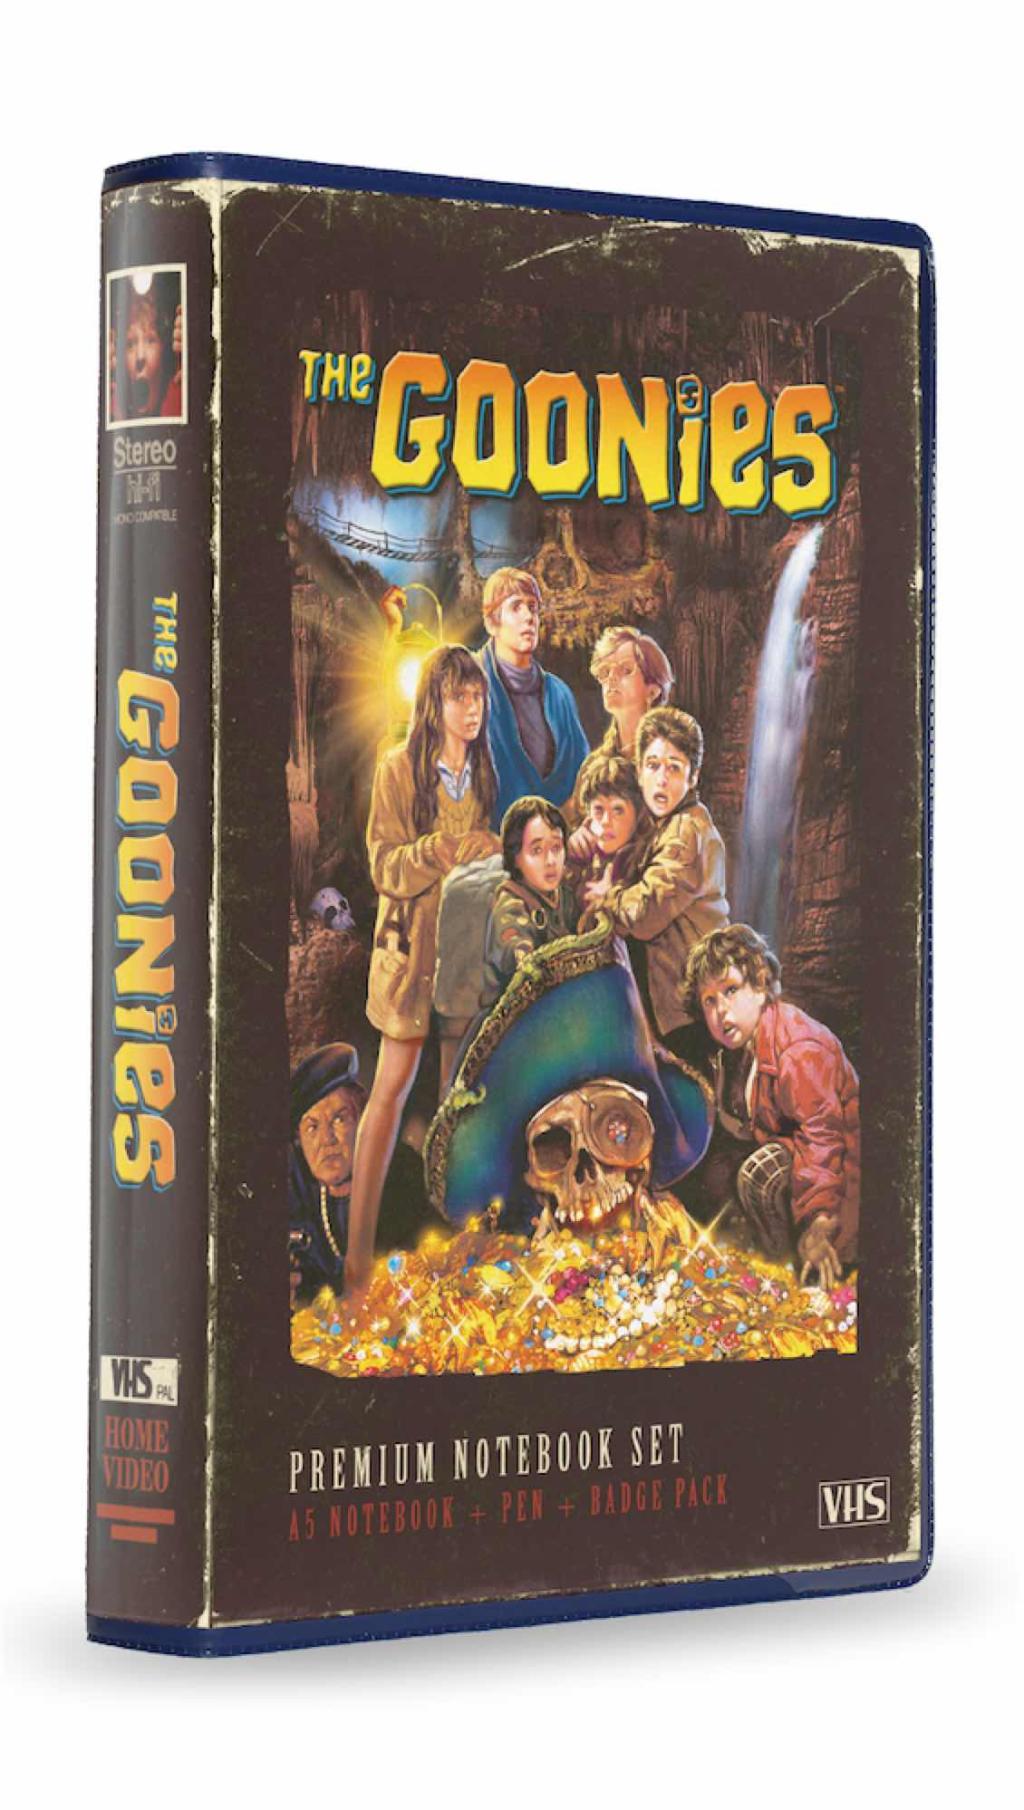 THE GOONIES - Set VHS - Briefpapier-Set (Notizbuch, Anstecker und Stift)